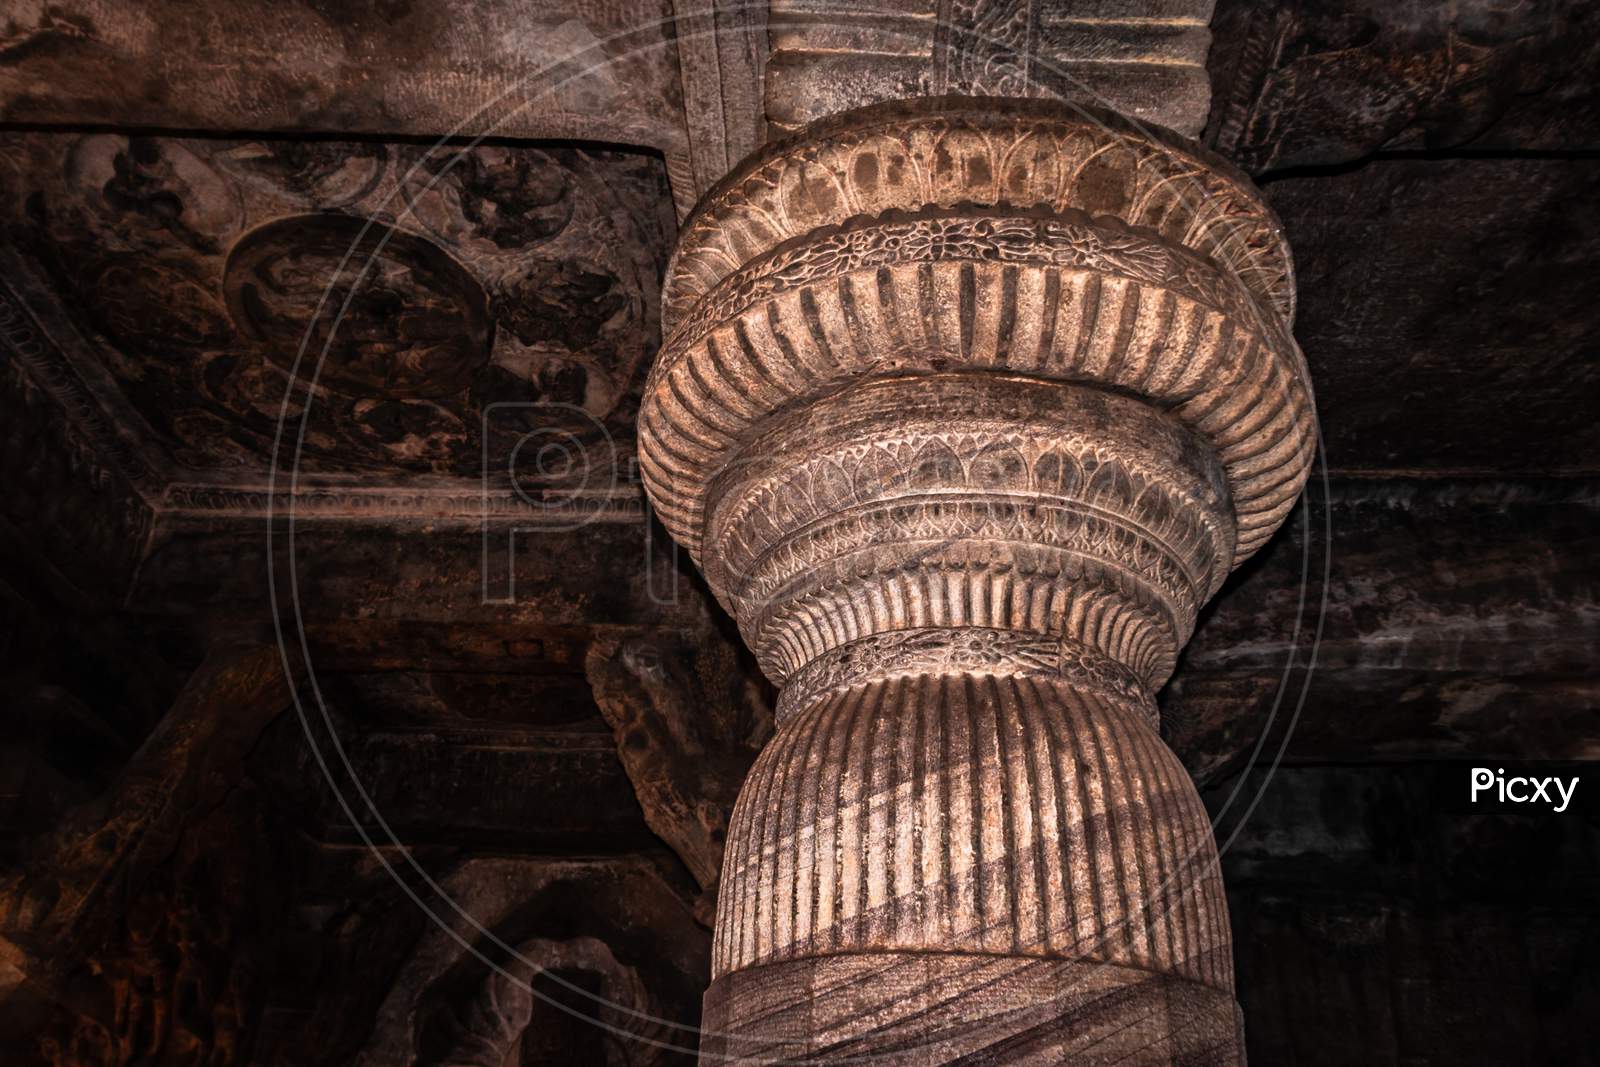 Badami Cave Temple Interior Pillars Stone Art In Details